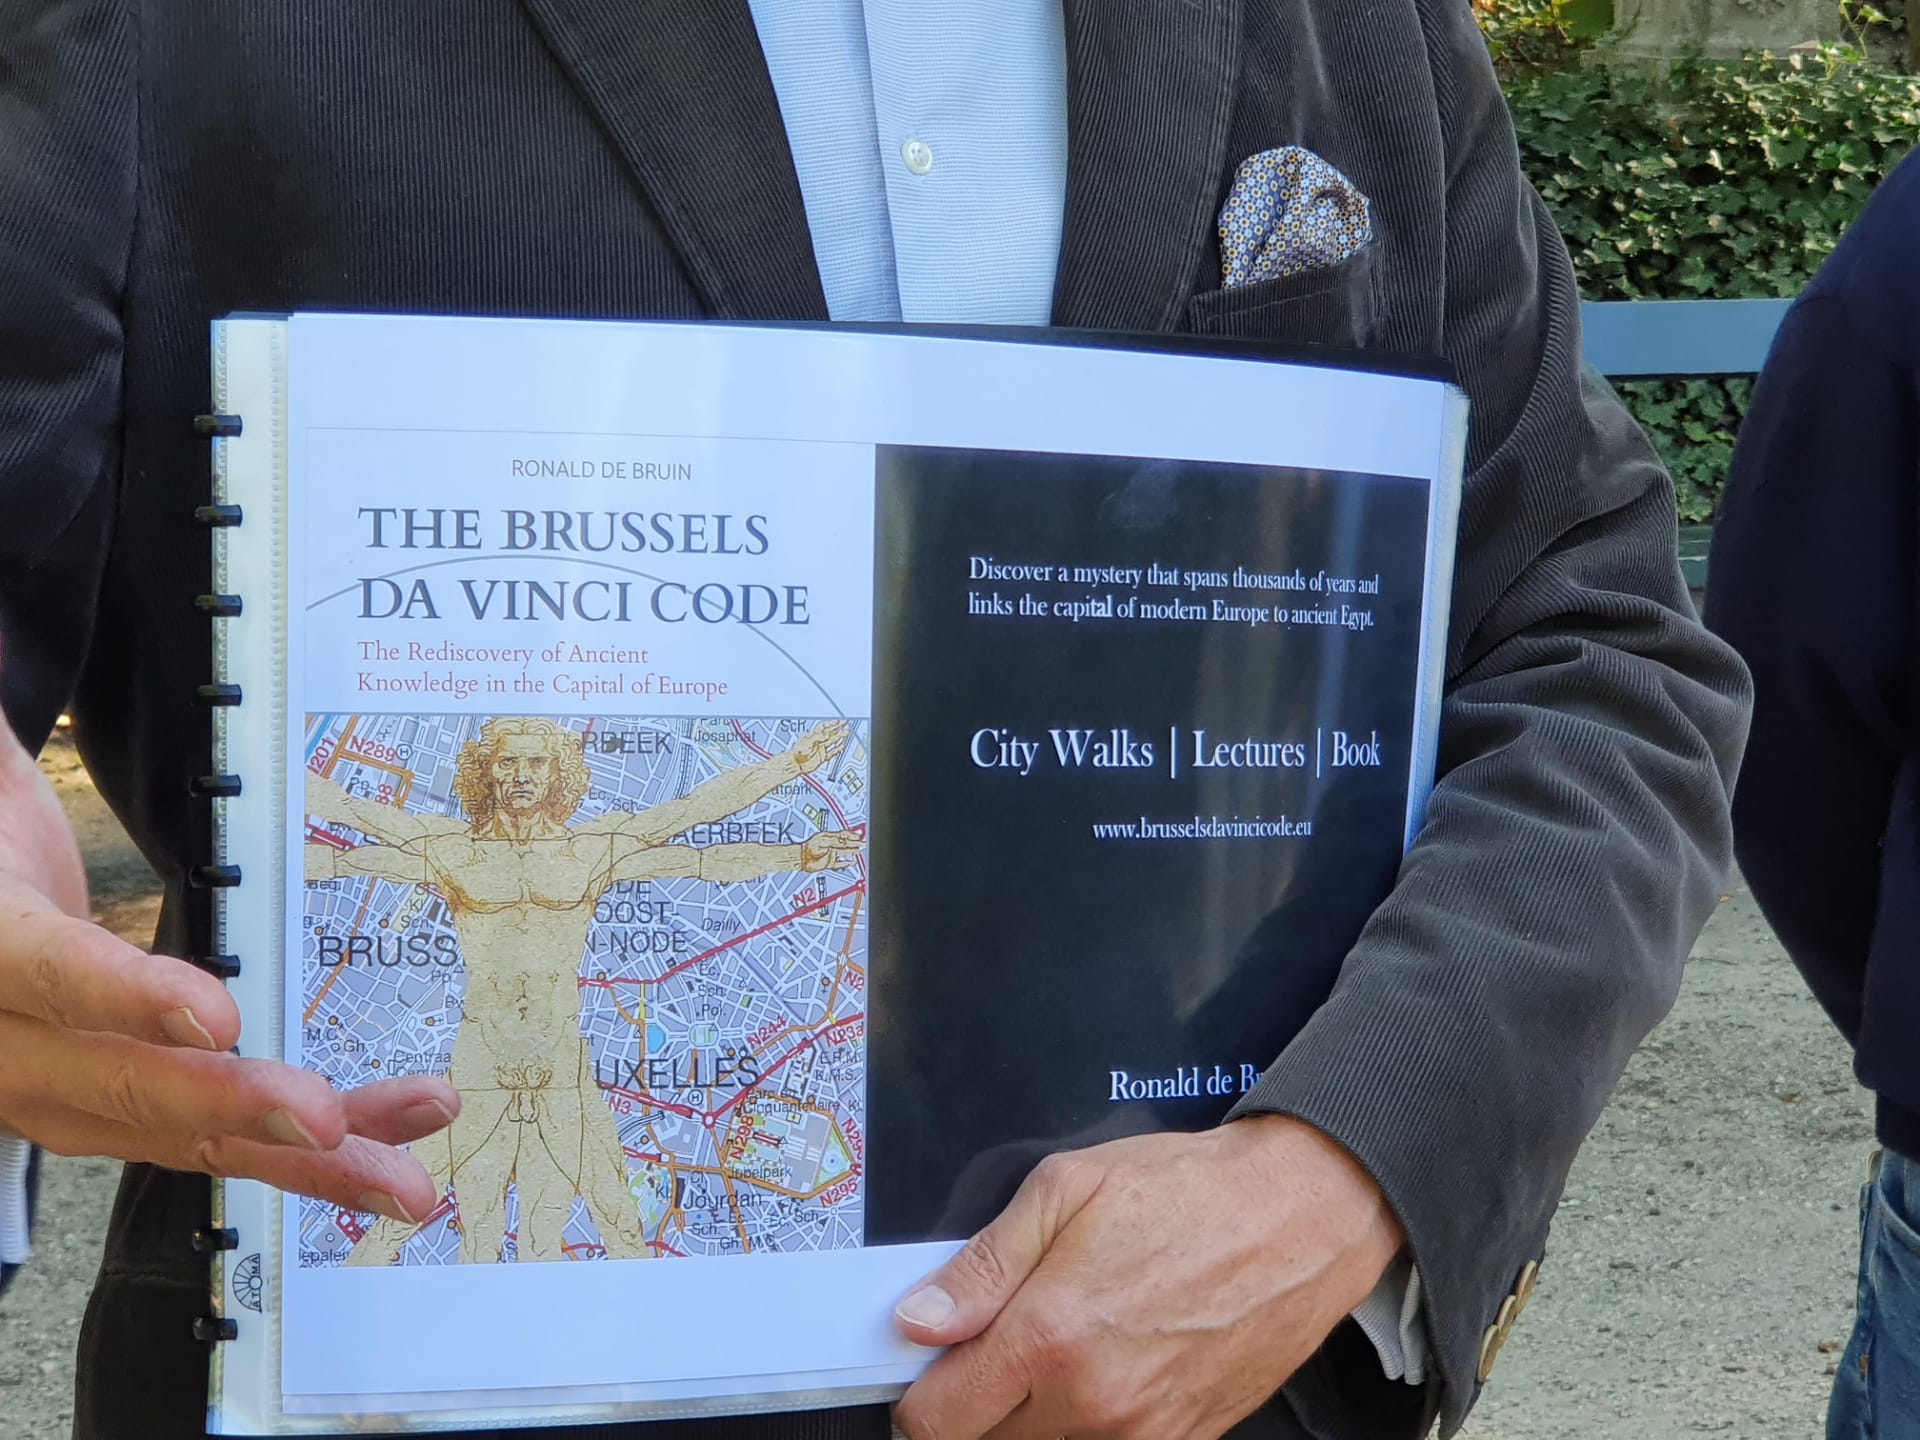 The Brussels Da Vinci Code